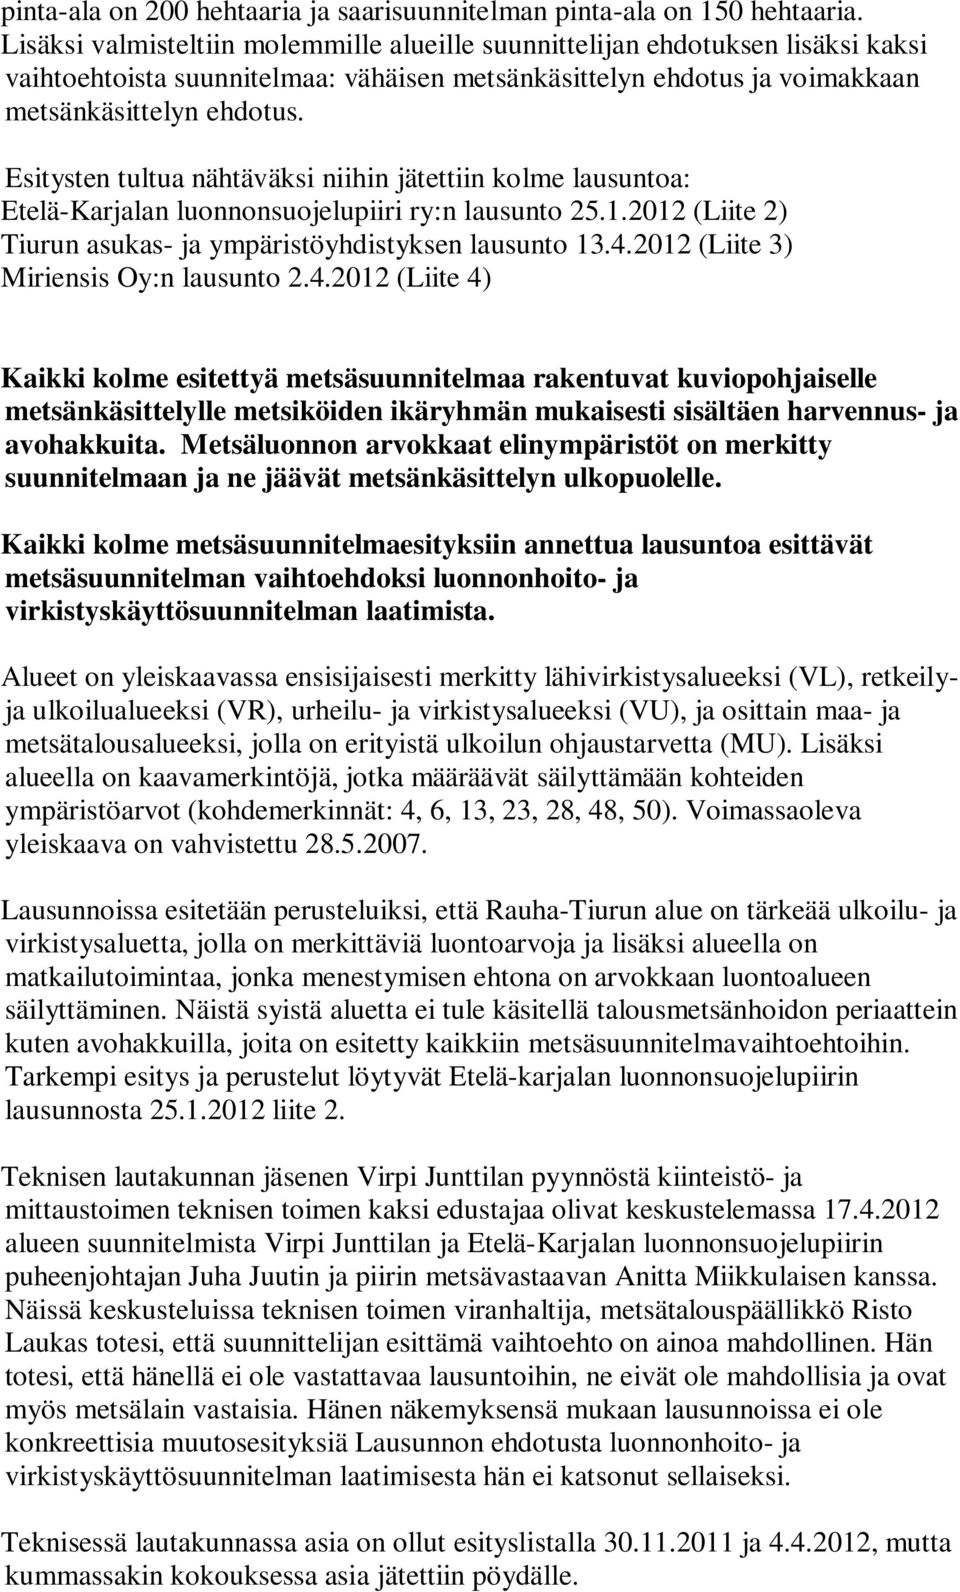 Esitysten tultua nähtäväksi niihin jätettiin kolme lausuntoa: Etelä-Karjalan luonnonsuojelupiiri ry:n lausunto 25.1.2012 (Liite 2) Tiurun asukas- ja ympäristöyhdistyksen lausunto 13.4.